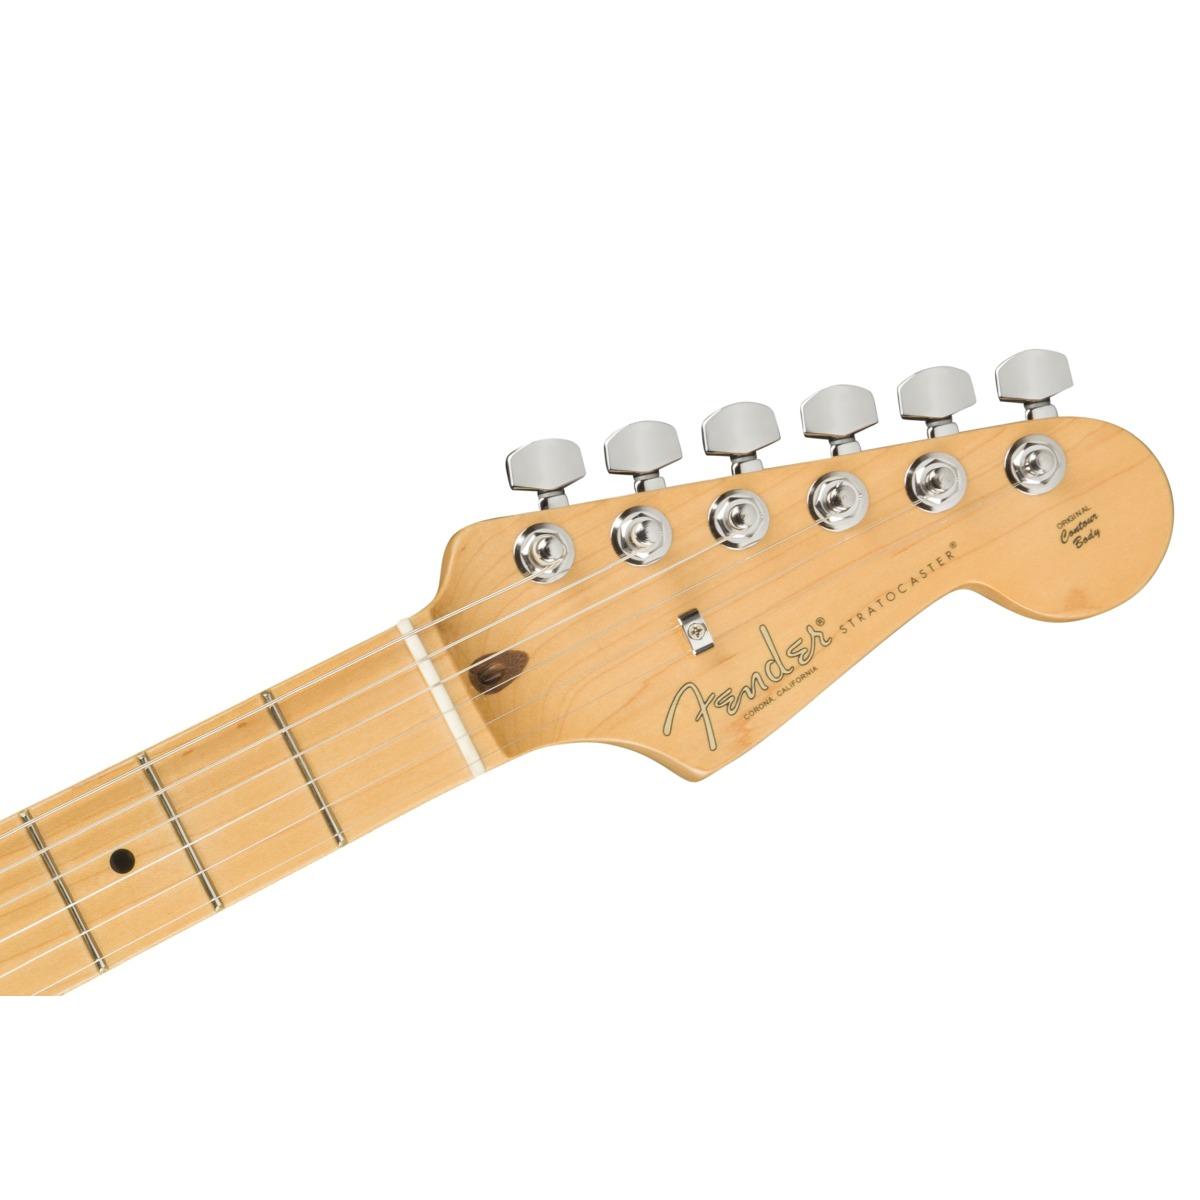 Fender stratocaster american professional ii mn 3 color sunburst chitarra elettrica